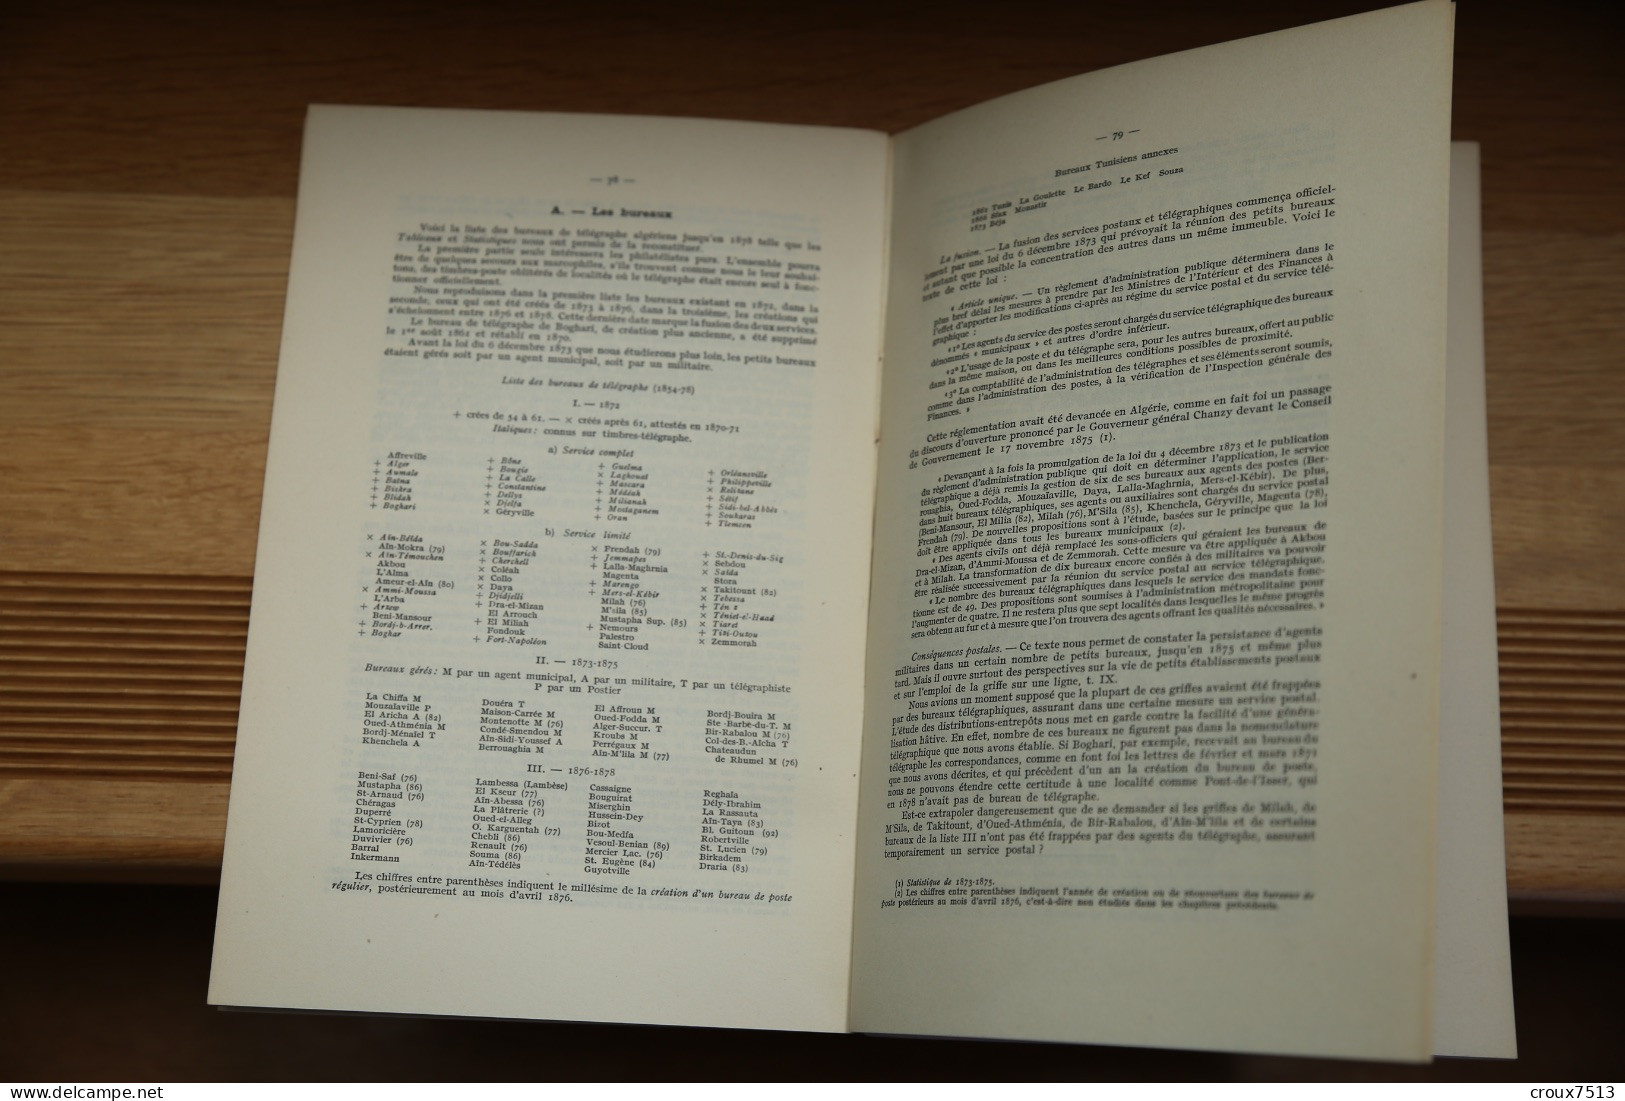 Halden, De Beaufond : Catalogue Des Marques Postales D'Algérie 1949. - Colonies Et Bureaux à L'Étranger